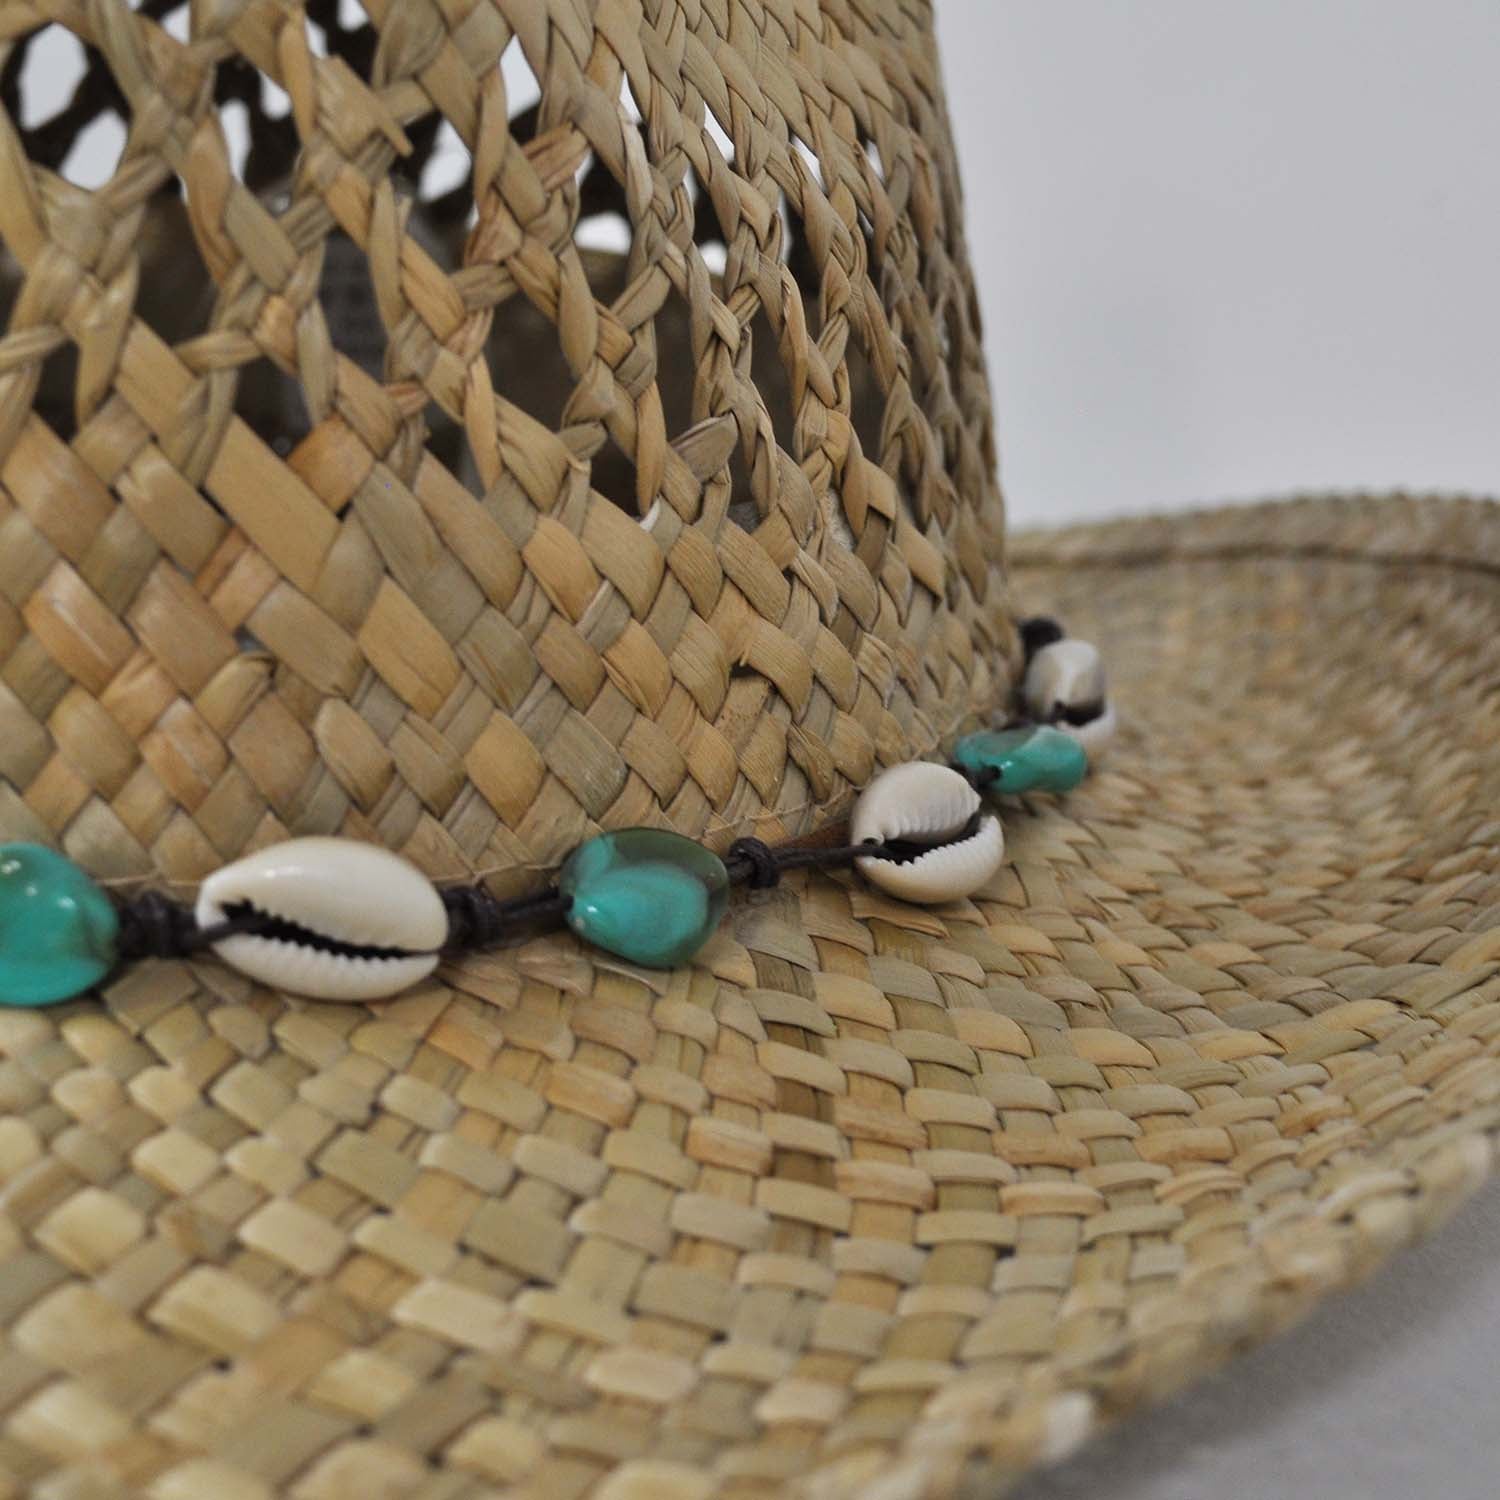 Sombrero conchas turquesa